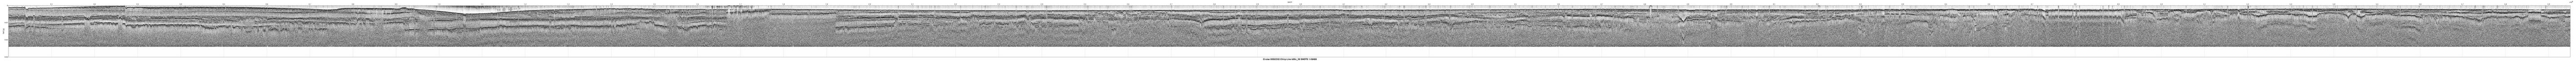 00SCC02 b00c_36 seismic profile image